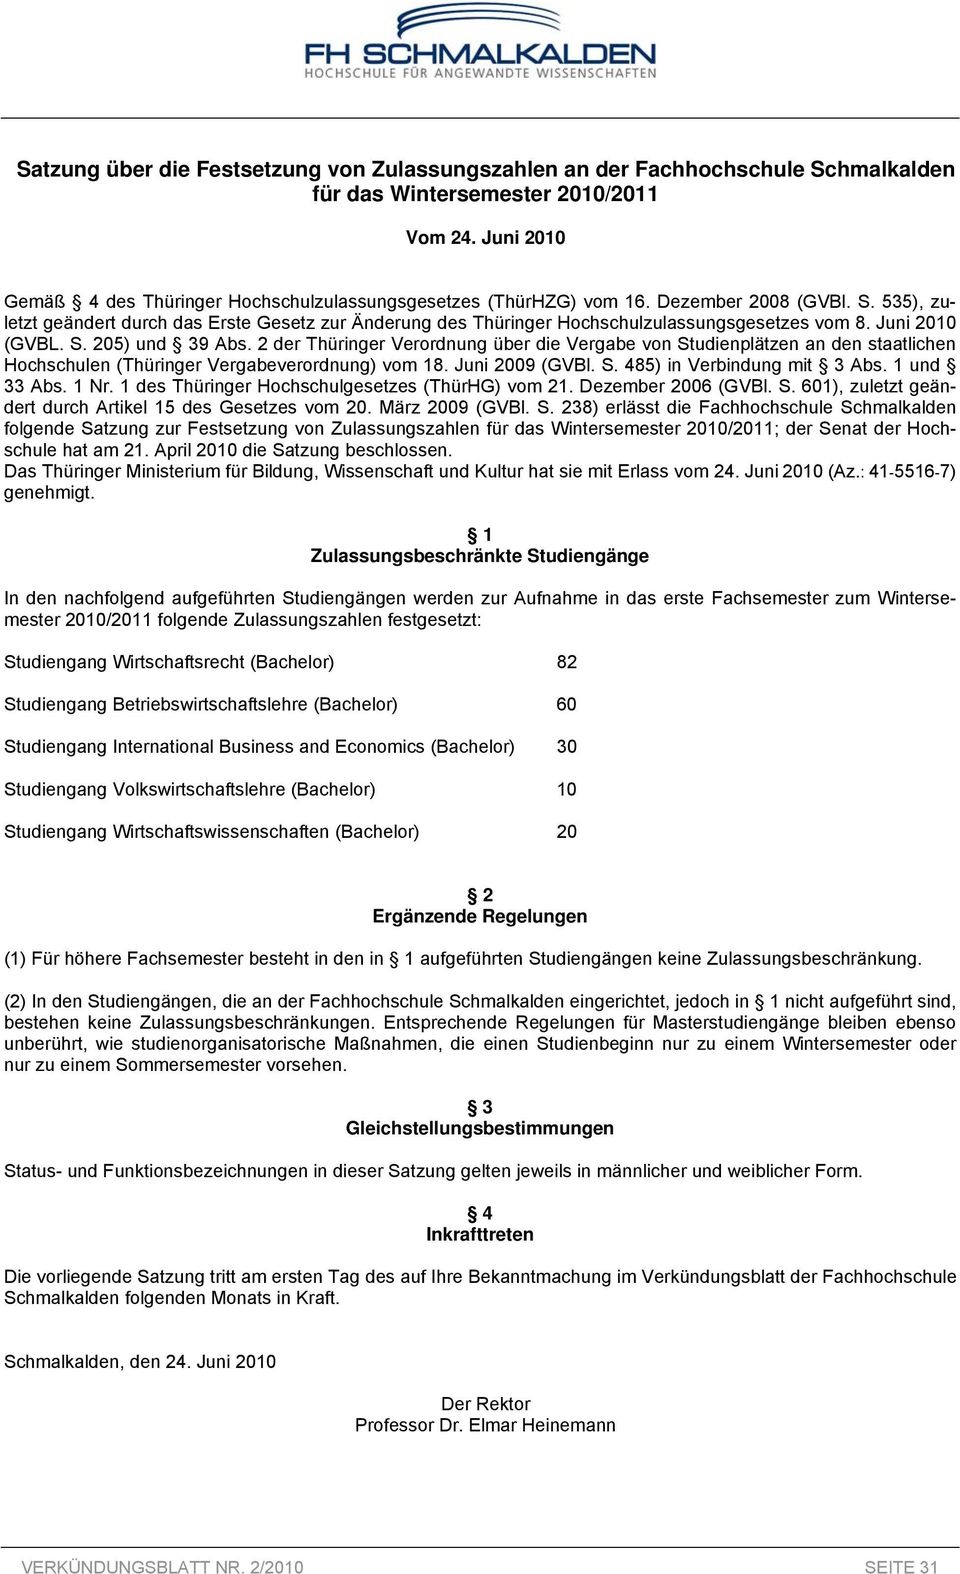 535), zuletzt geändert durch das Erste Gesetz zur Änderung des Thüringer Hochschulzulassungsgesetzes vom 8. Juni 2010 (GVBL. S. 205) und 39 Abs.